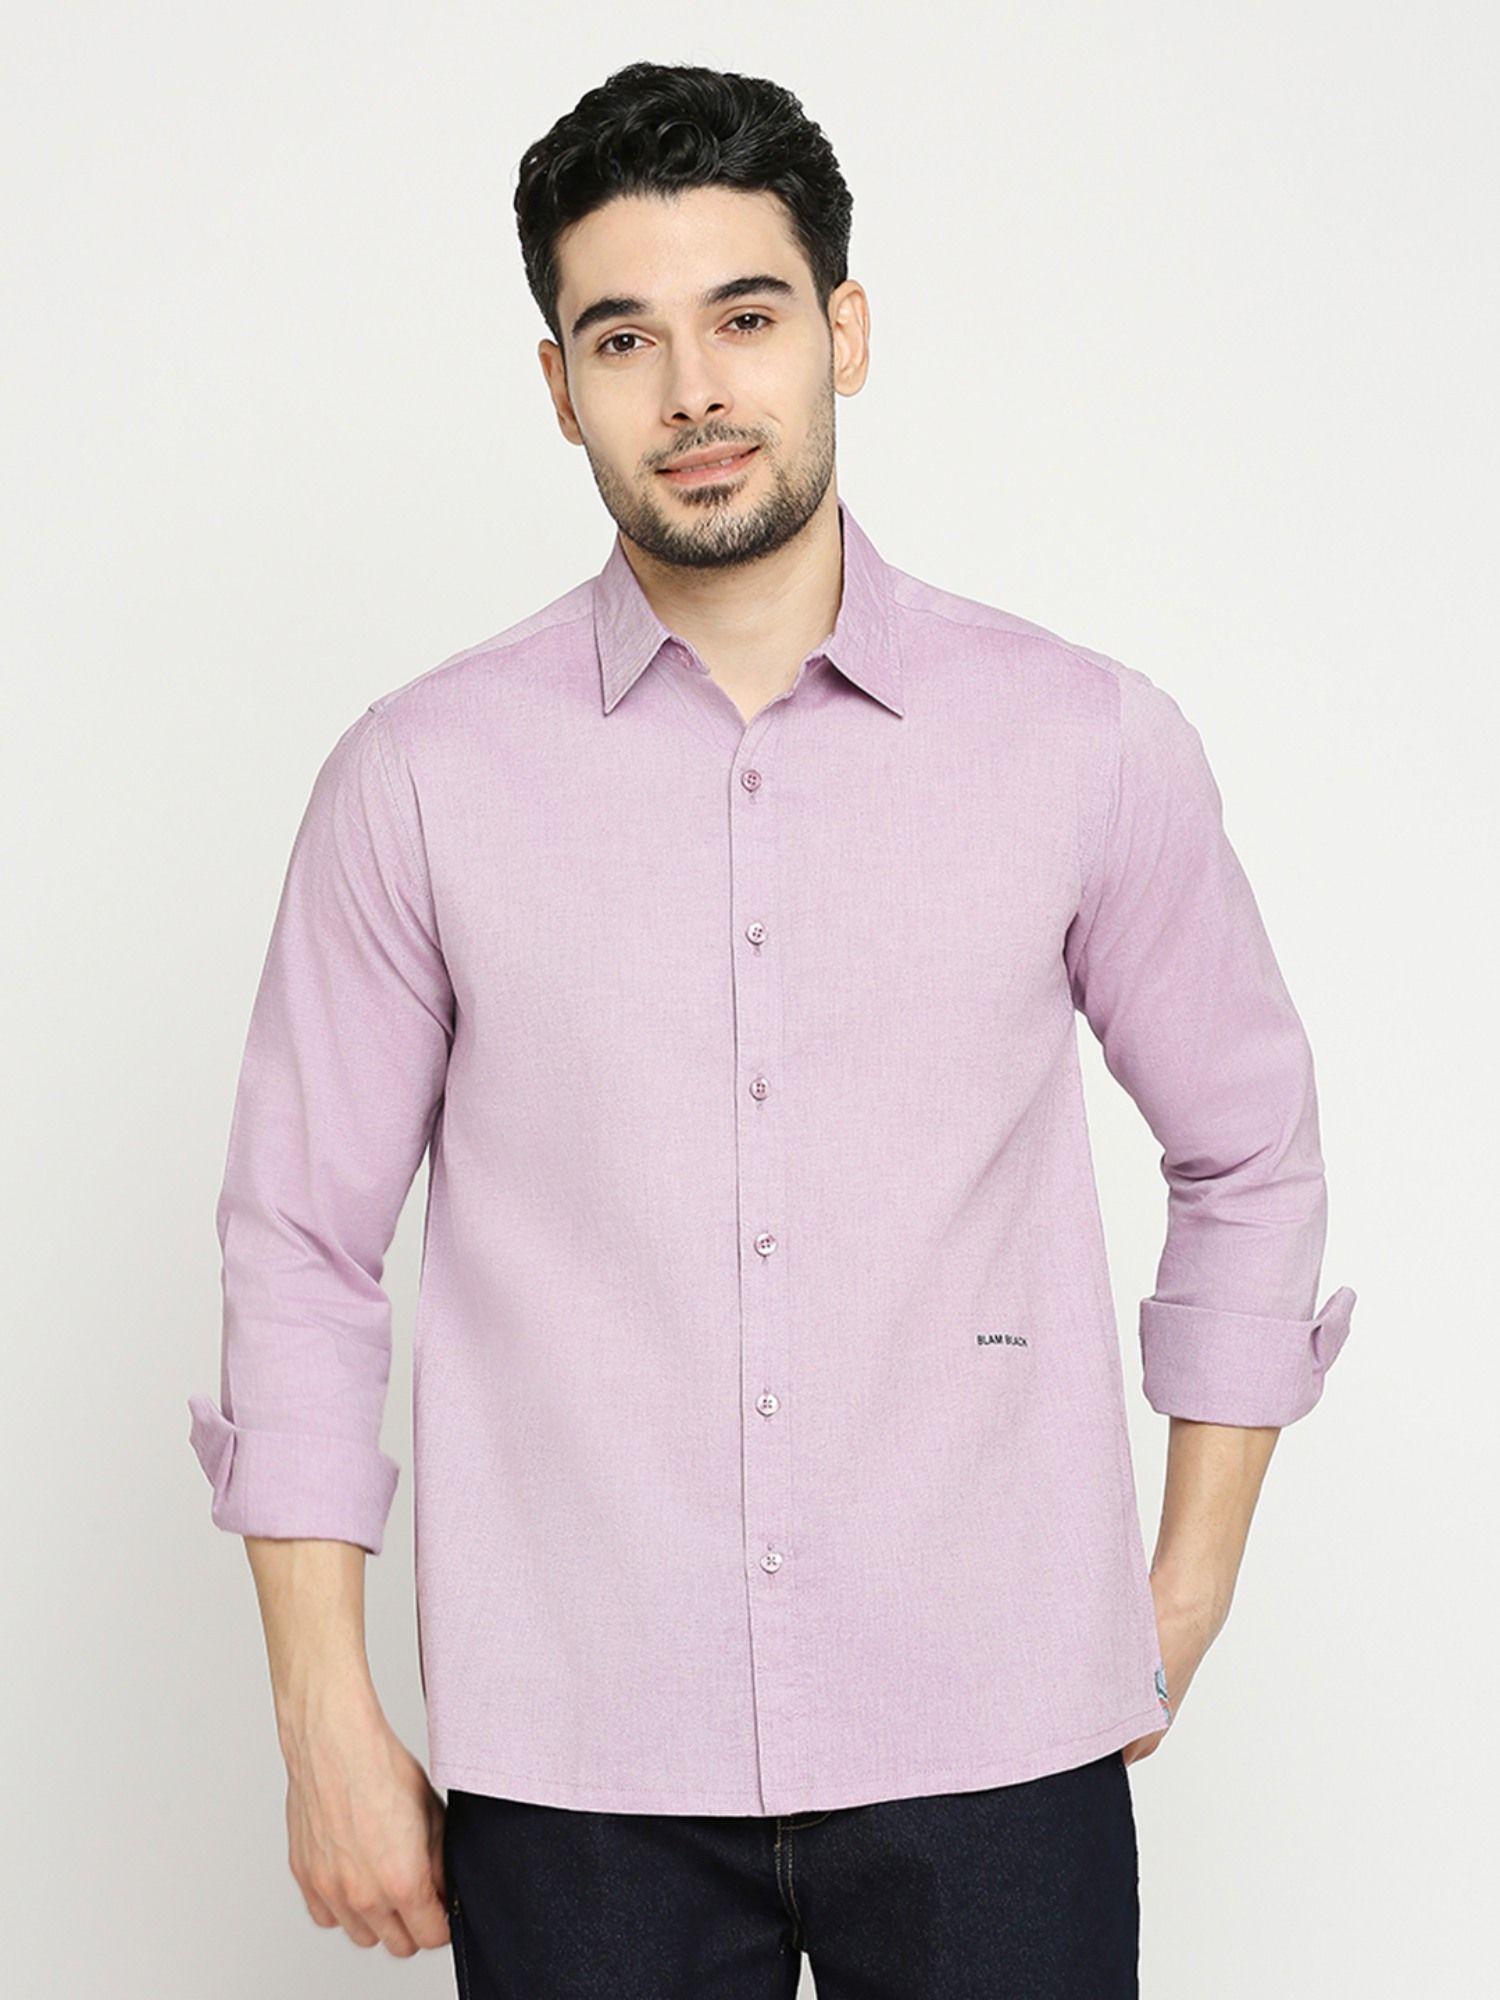 men's solid full sleeves regular fit spread collar shirt